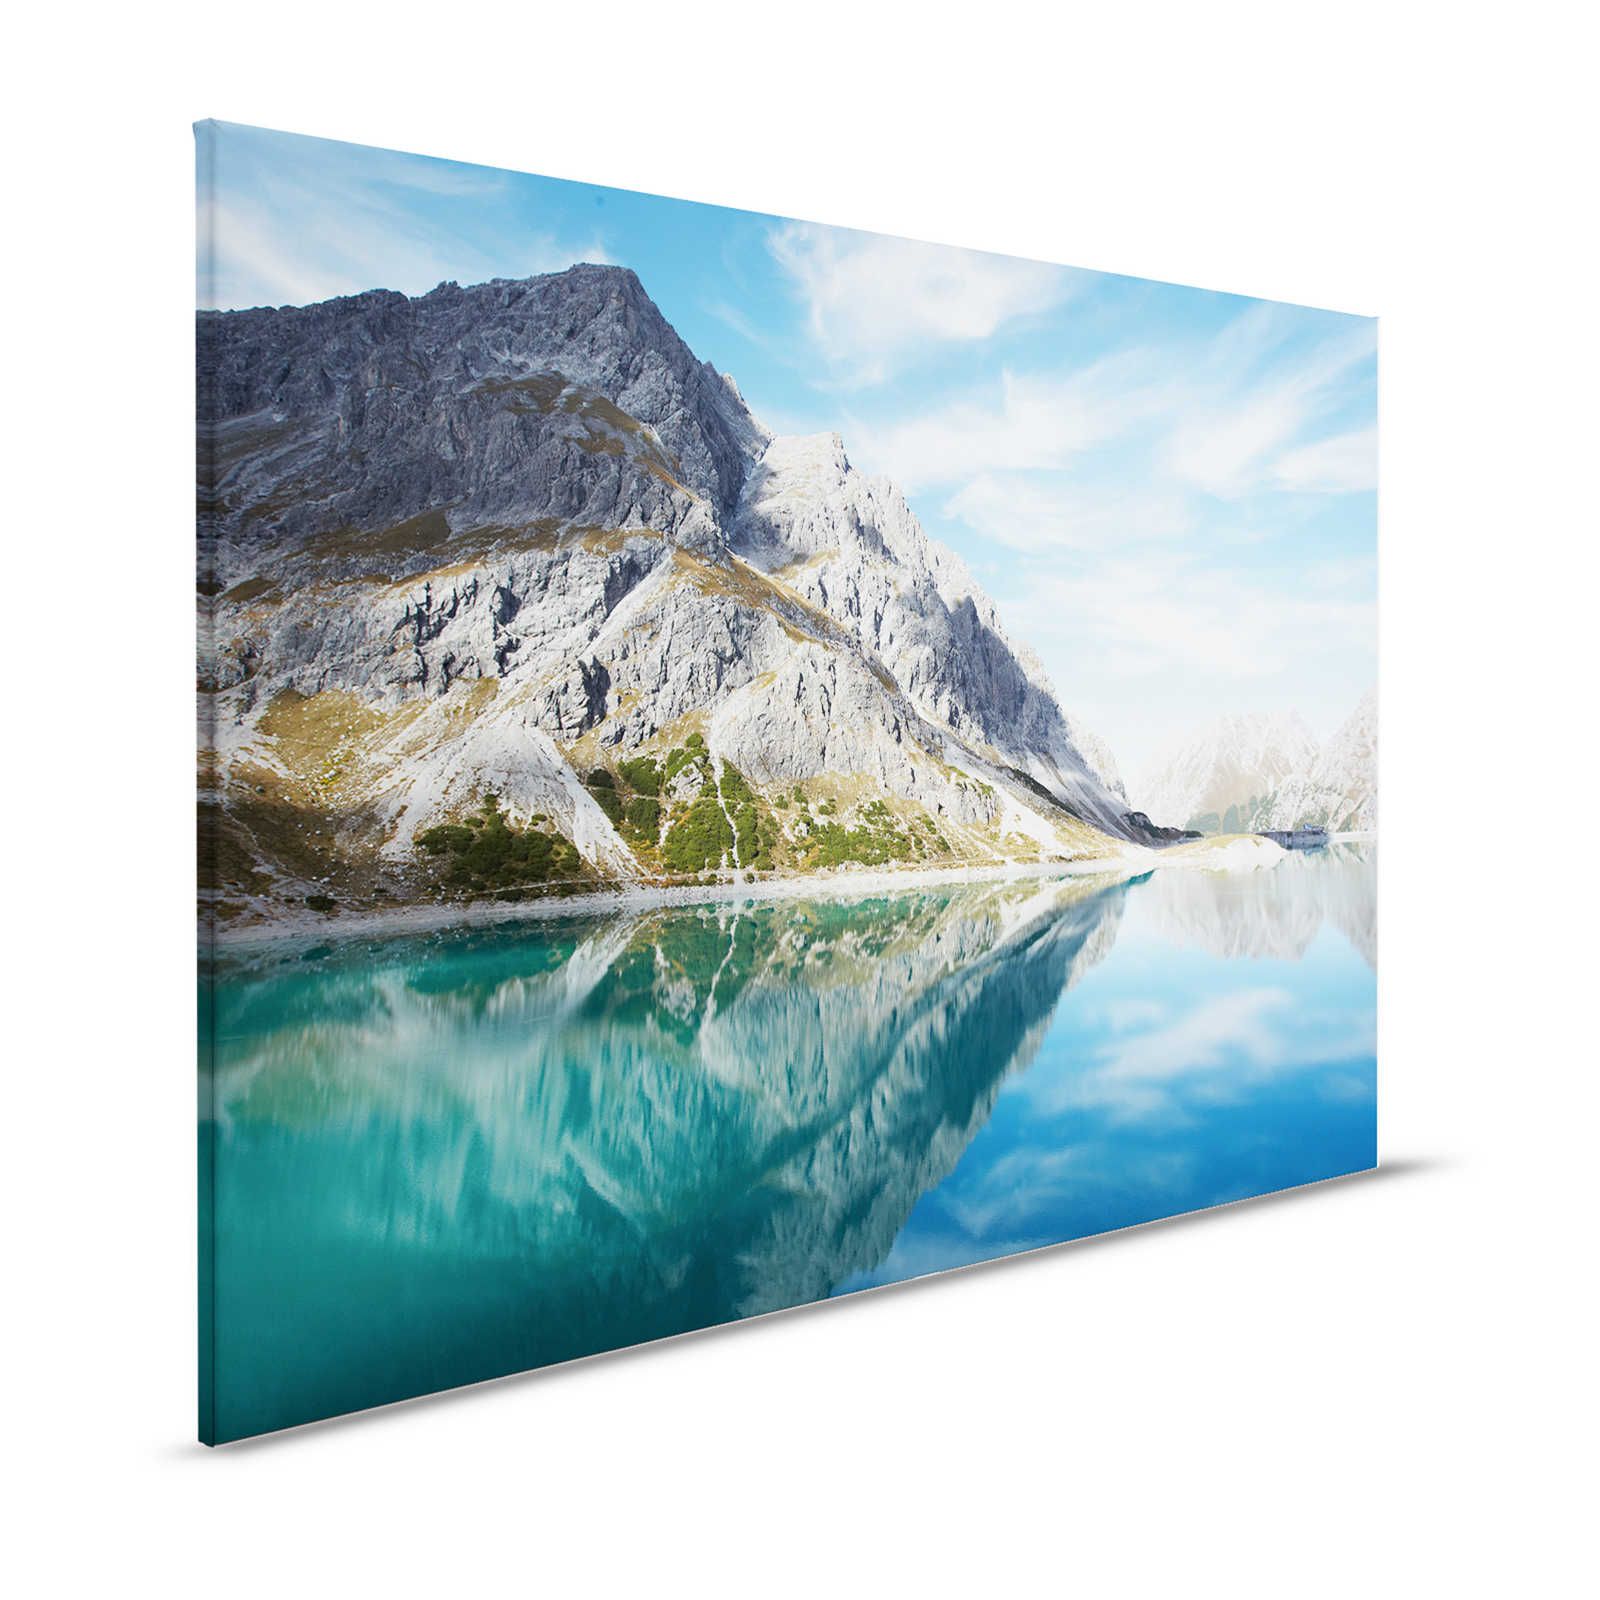 Lago de montaña claro - Cuadro en lienzo con panorama natural de montaña - 1,20 m x 0,80 m
